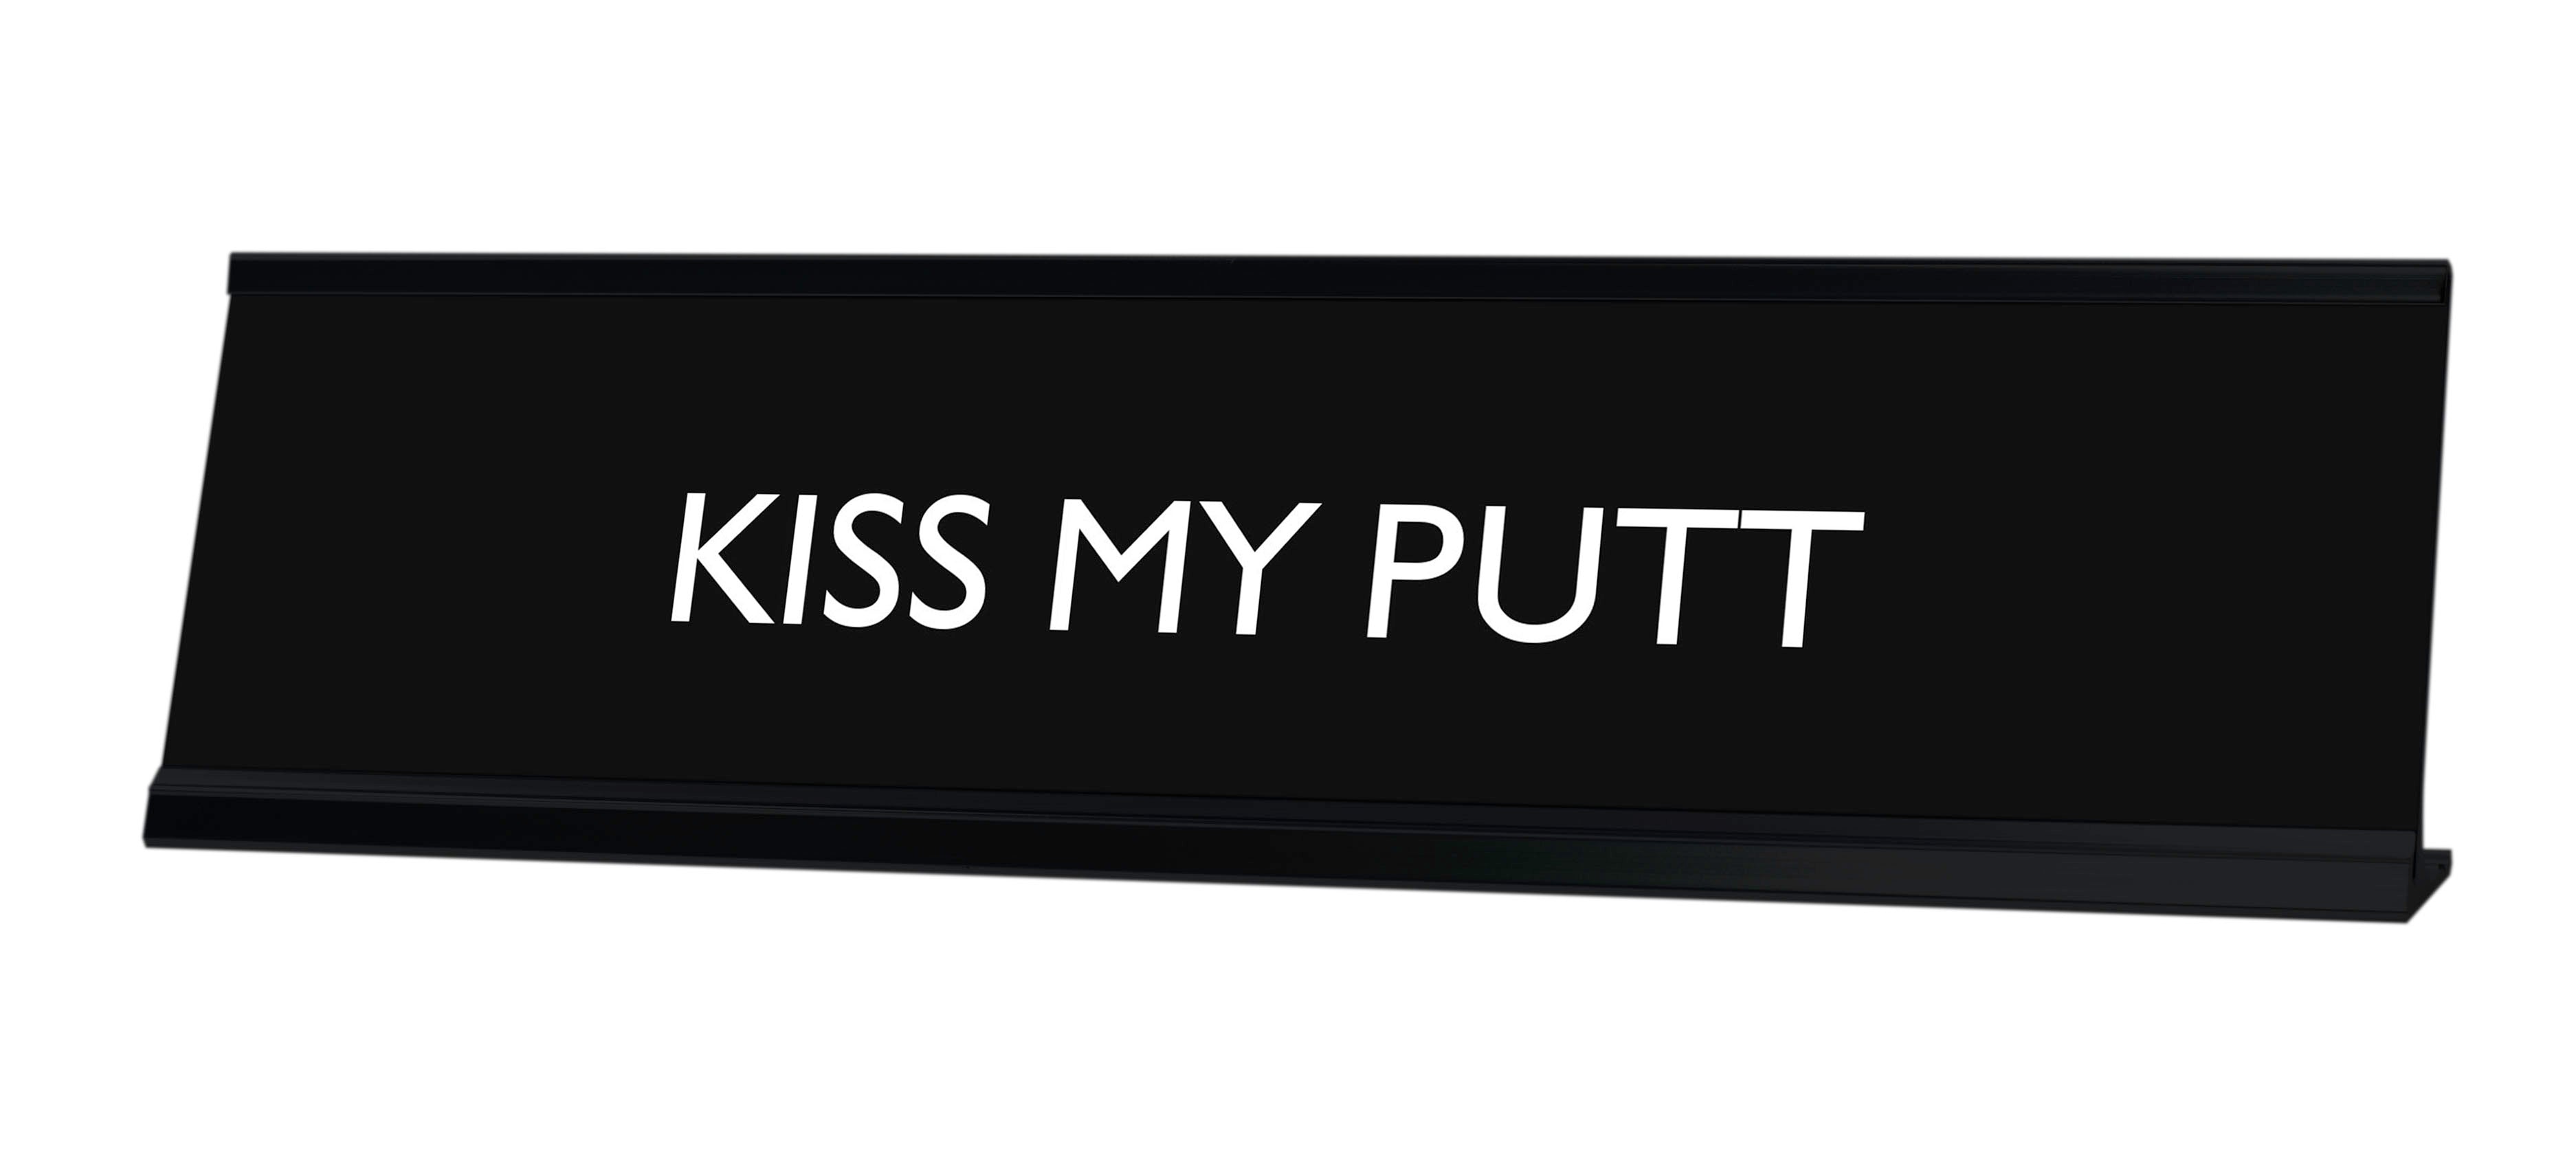 KISS MY PUTT Novelty Desk Sign